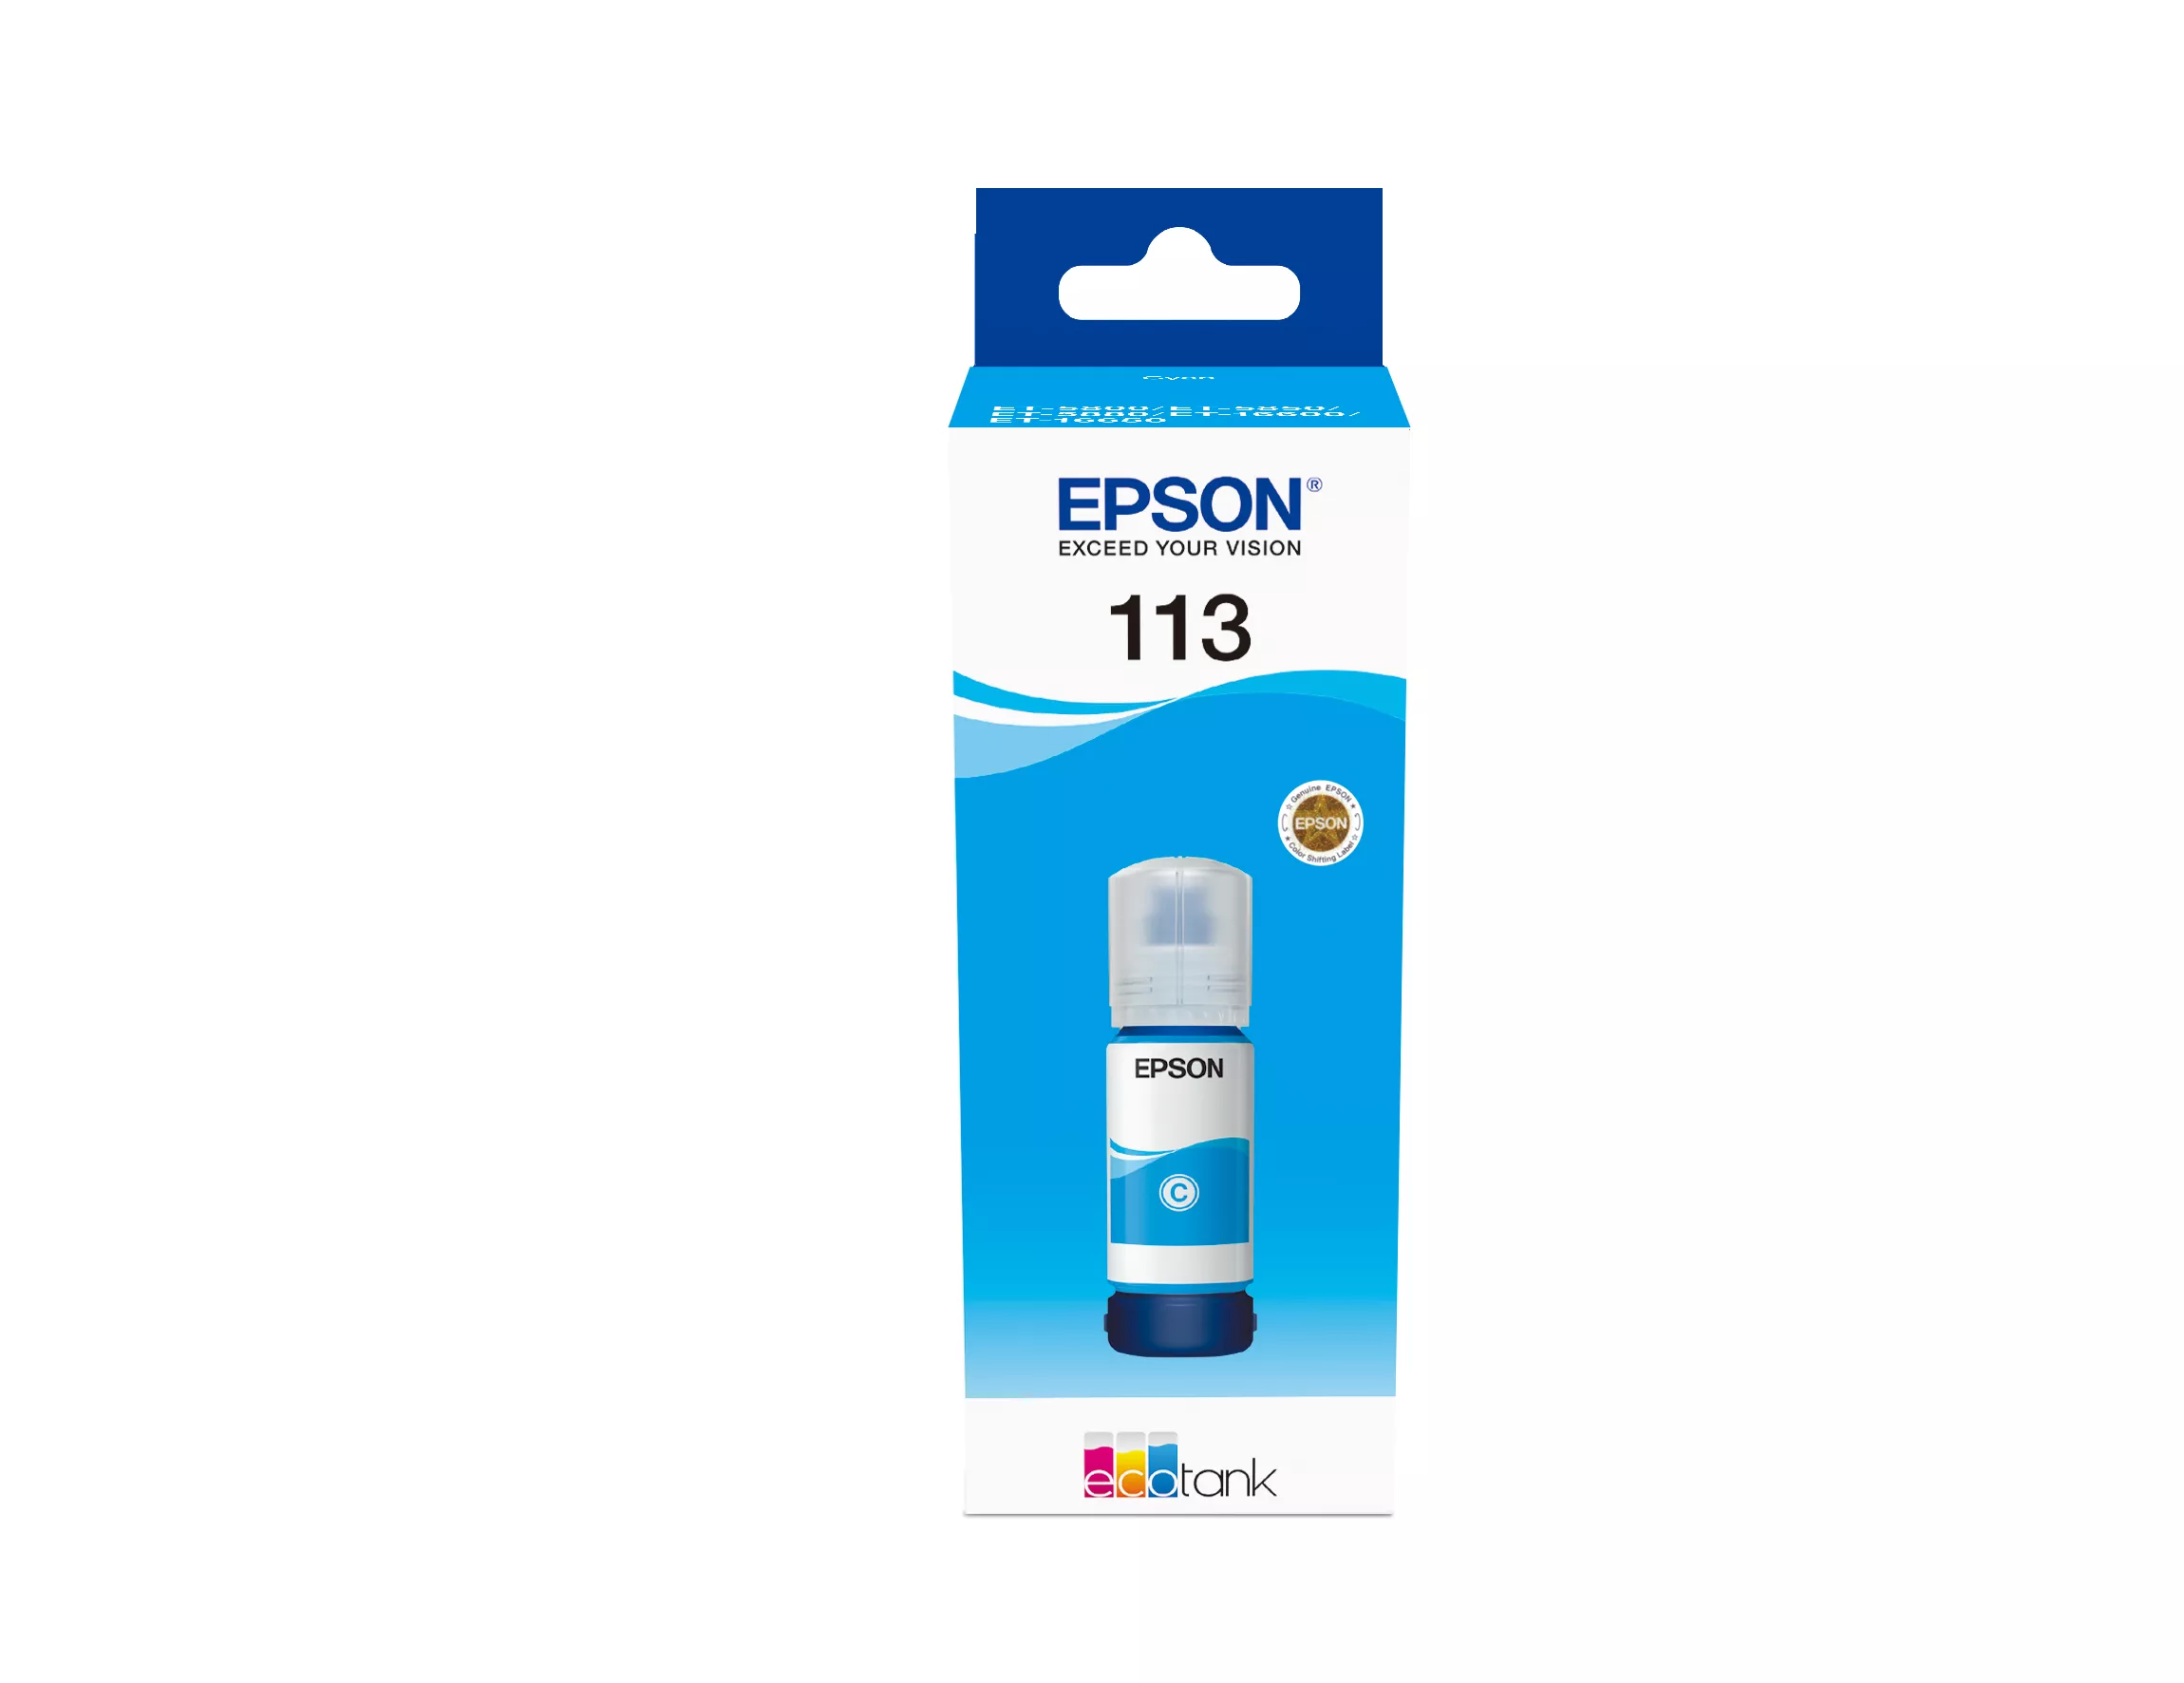 Achat EPSON 113 EcoTank Pigment Cyan ink bottle et autres produits de la marque Epson